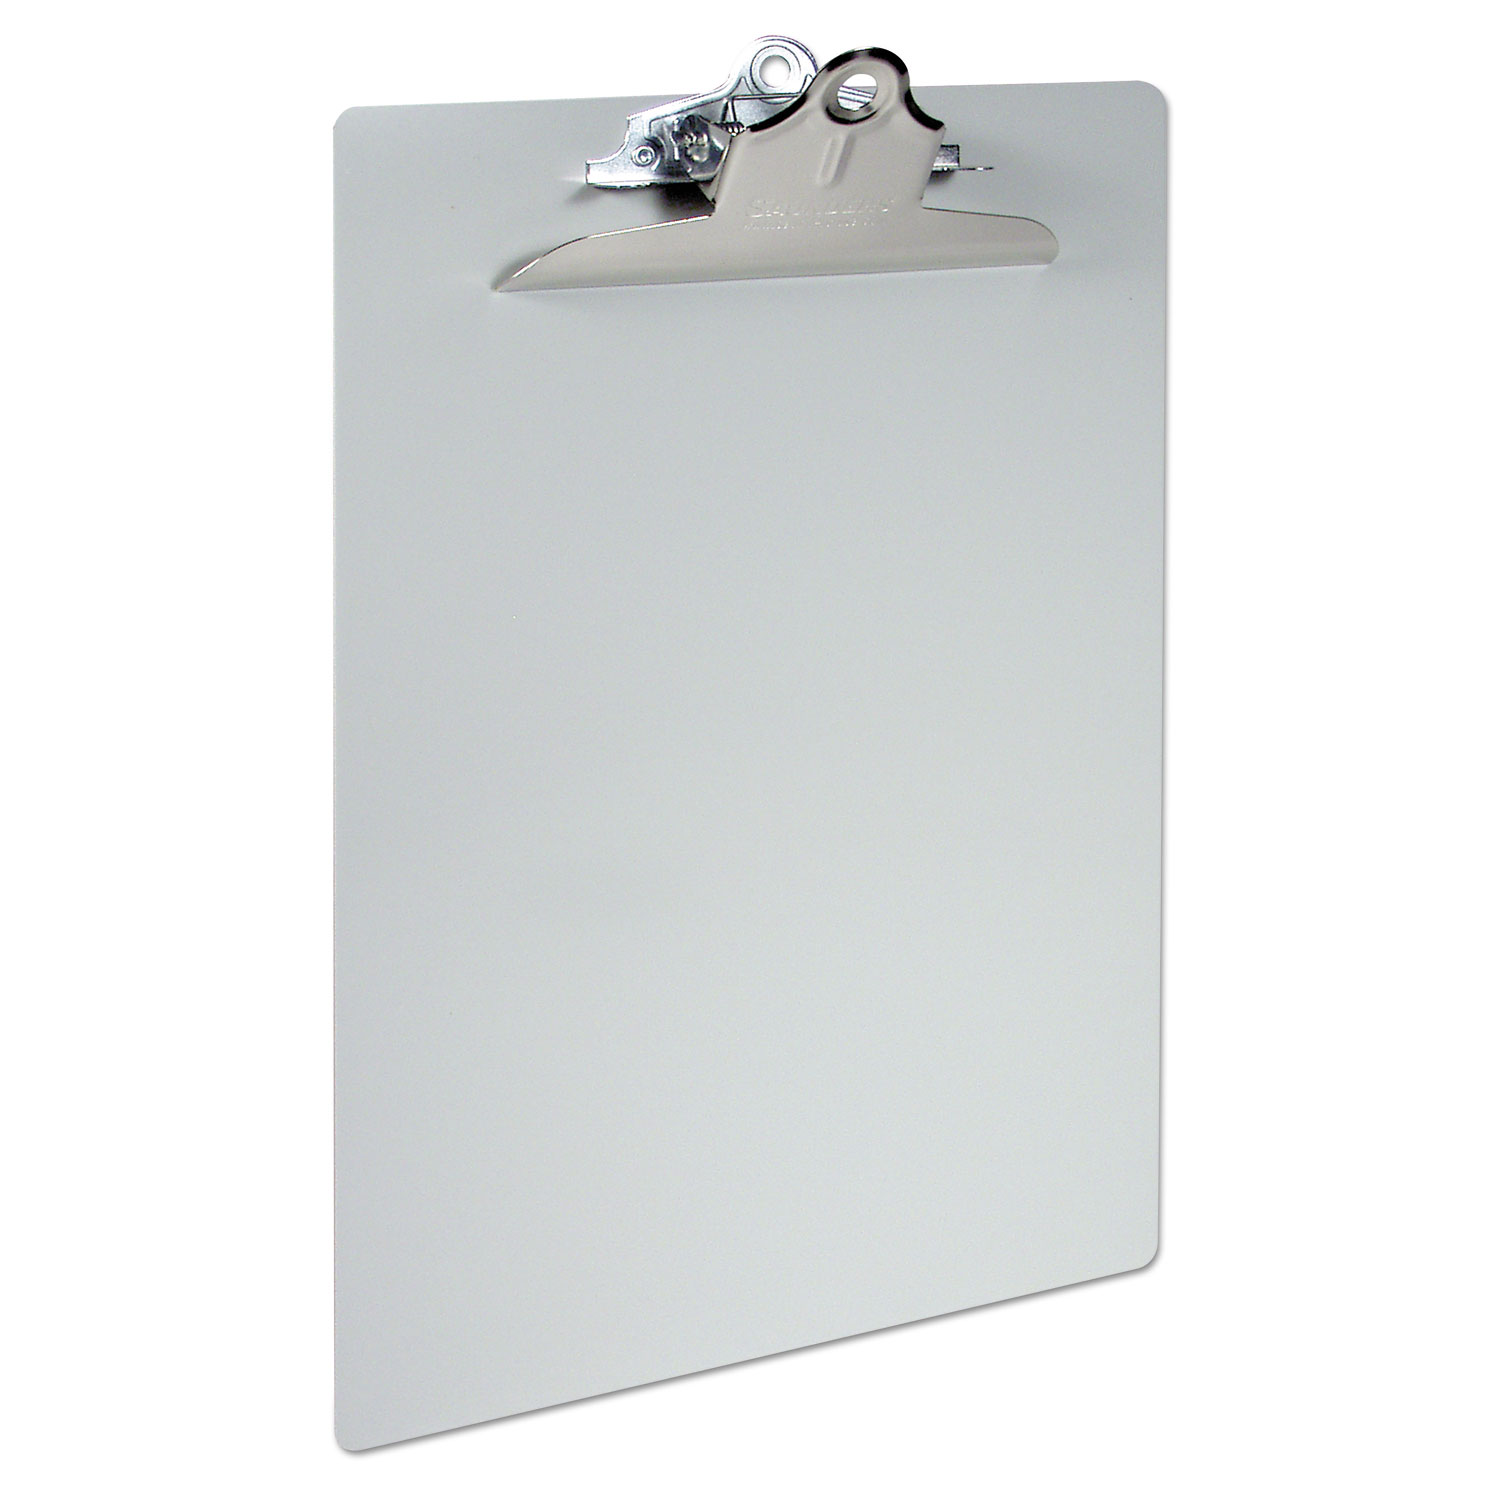 Aluminum Clipboard w/High-Capacity Clip, 1 Clip Cap, 8 1/2 x 14 Sheets, Silver